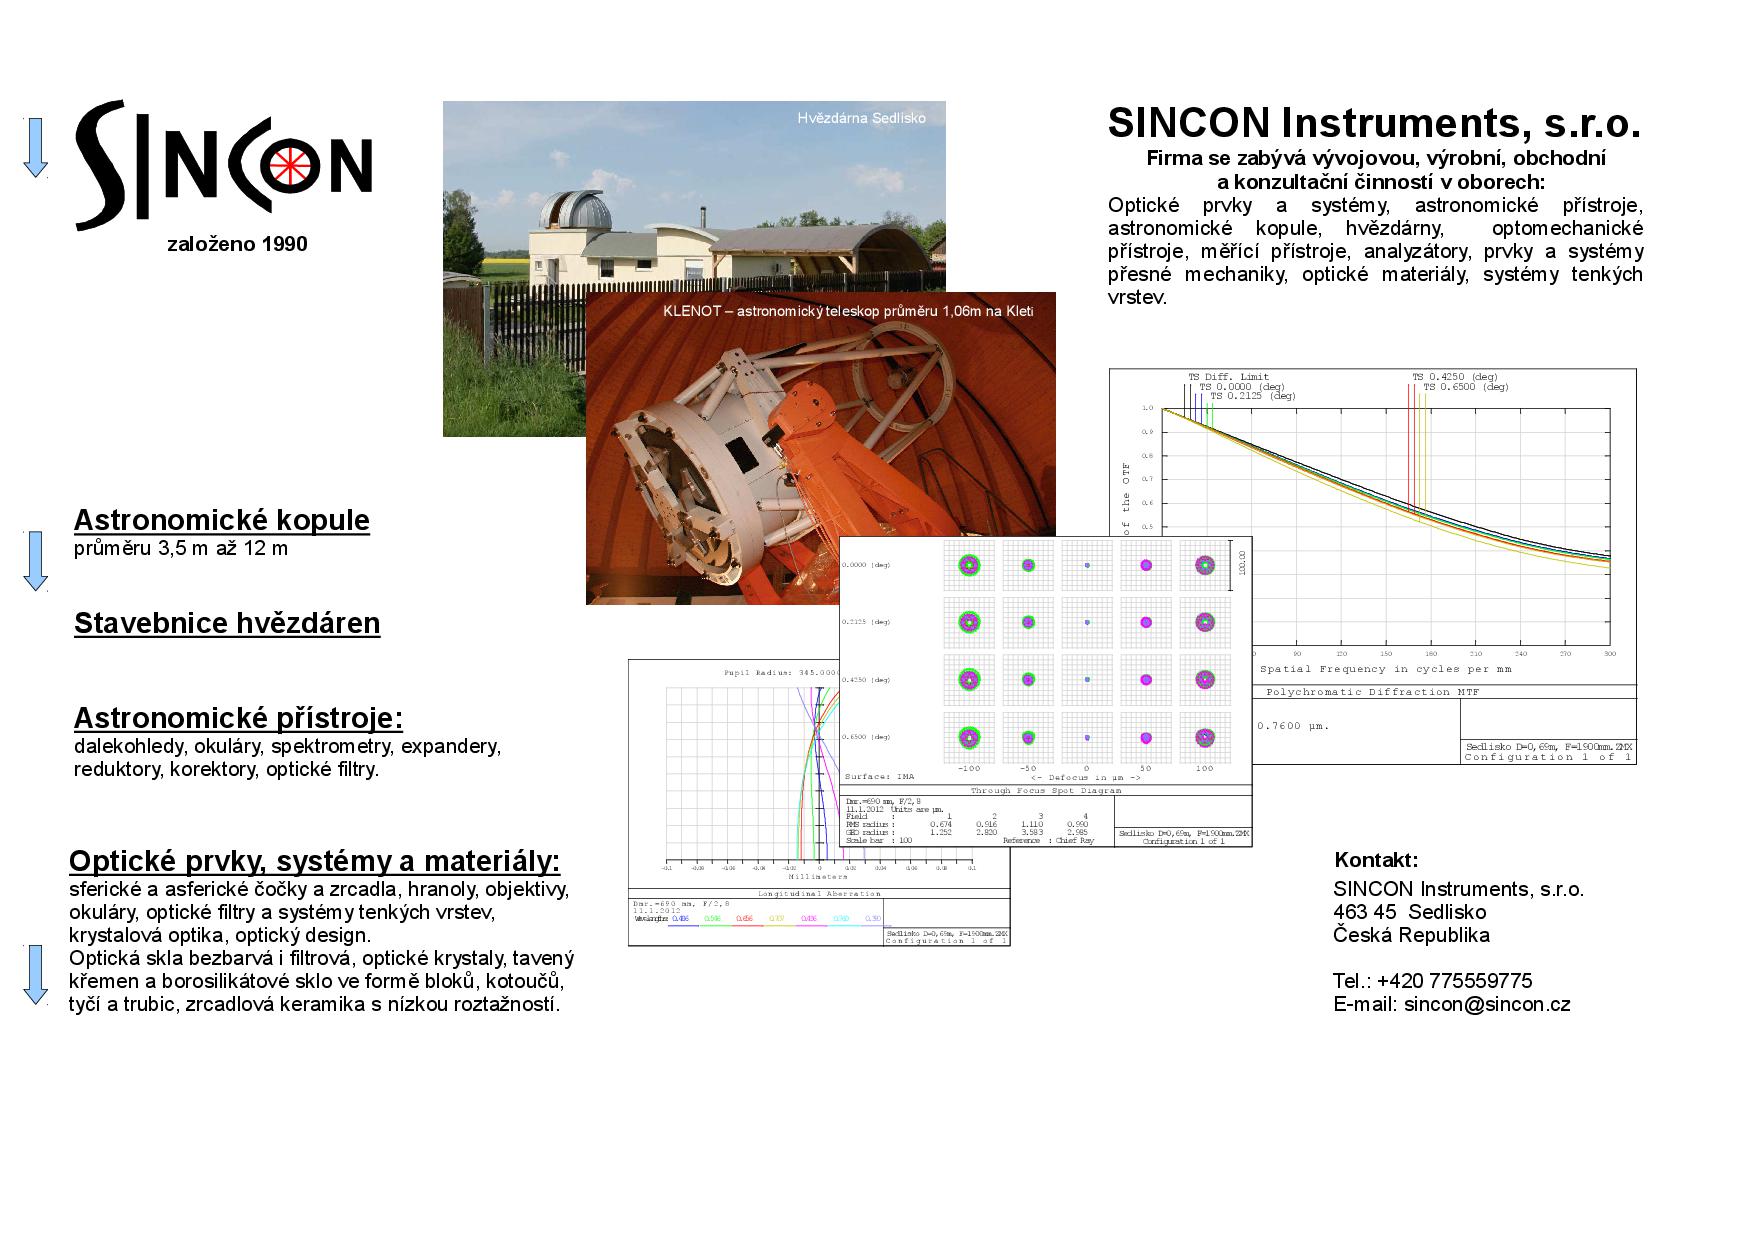 SINCON Instruments, optika, přístroje, astronomické teleskopy, dalekohledy, vývoj, výroba